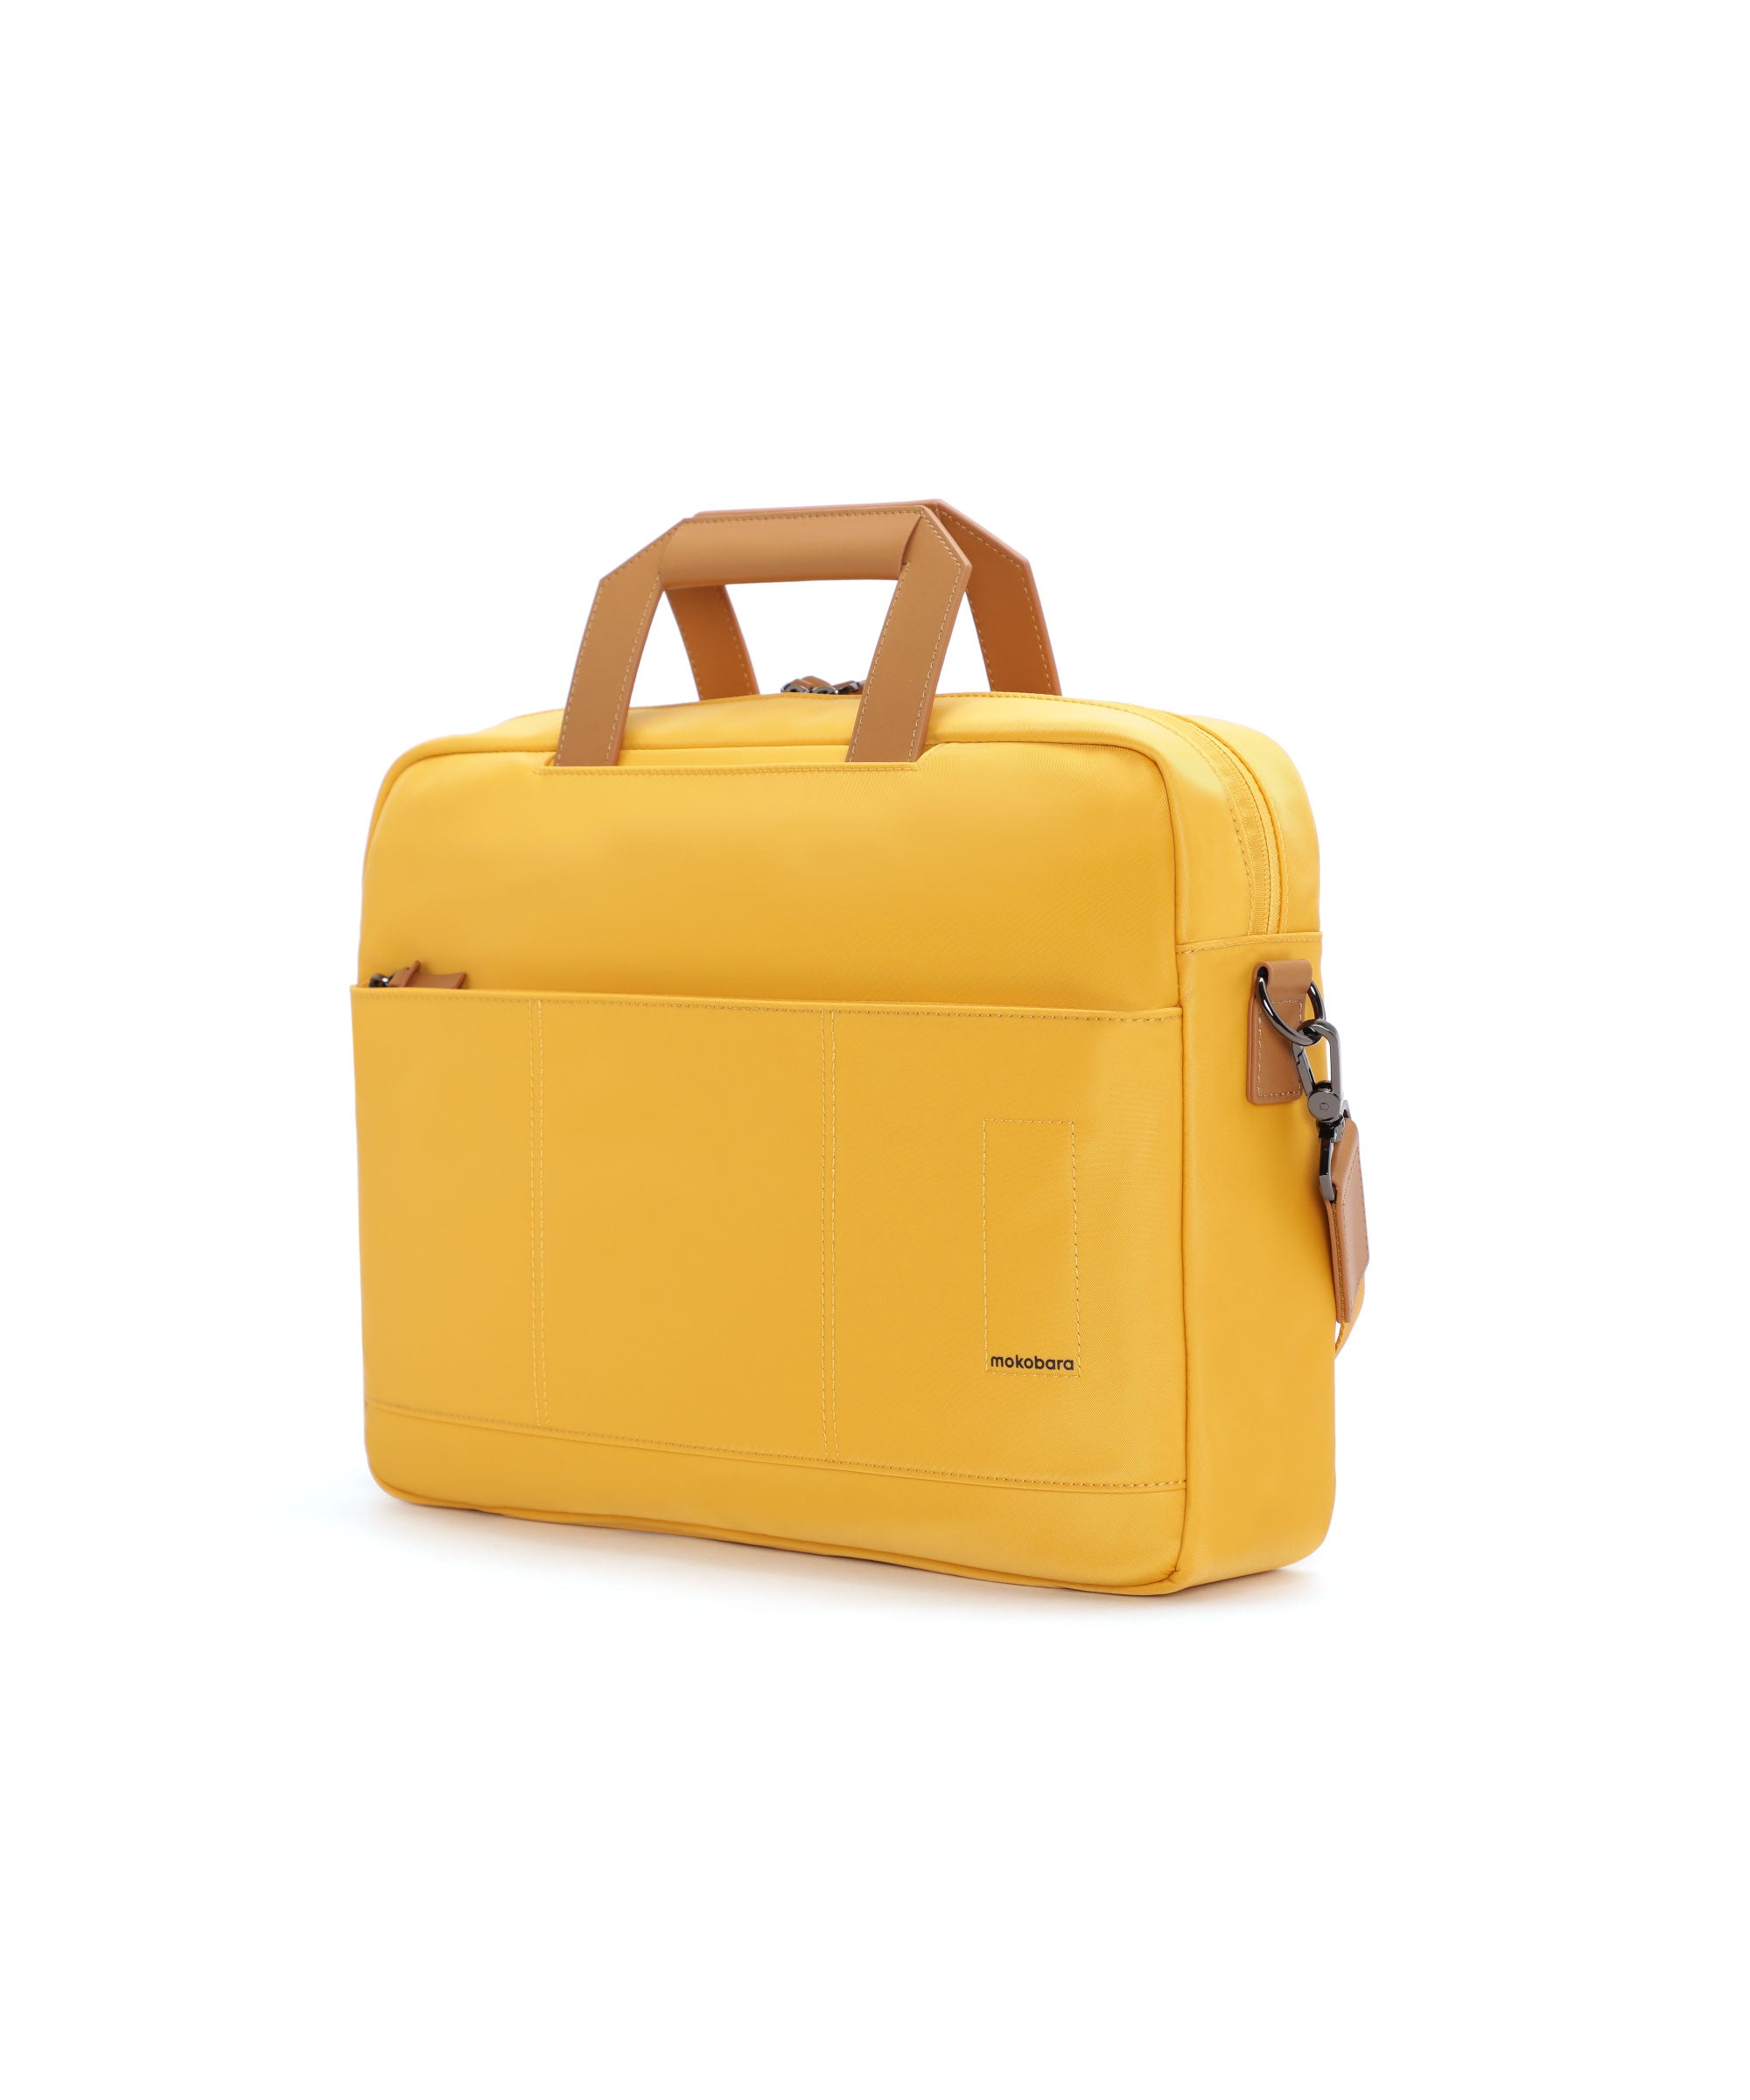 Color_Enough Yellow | The Briefcase